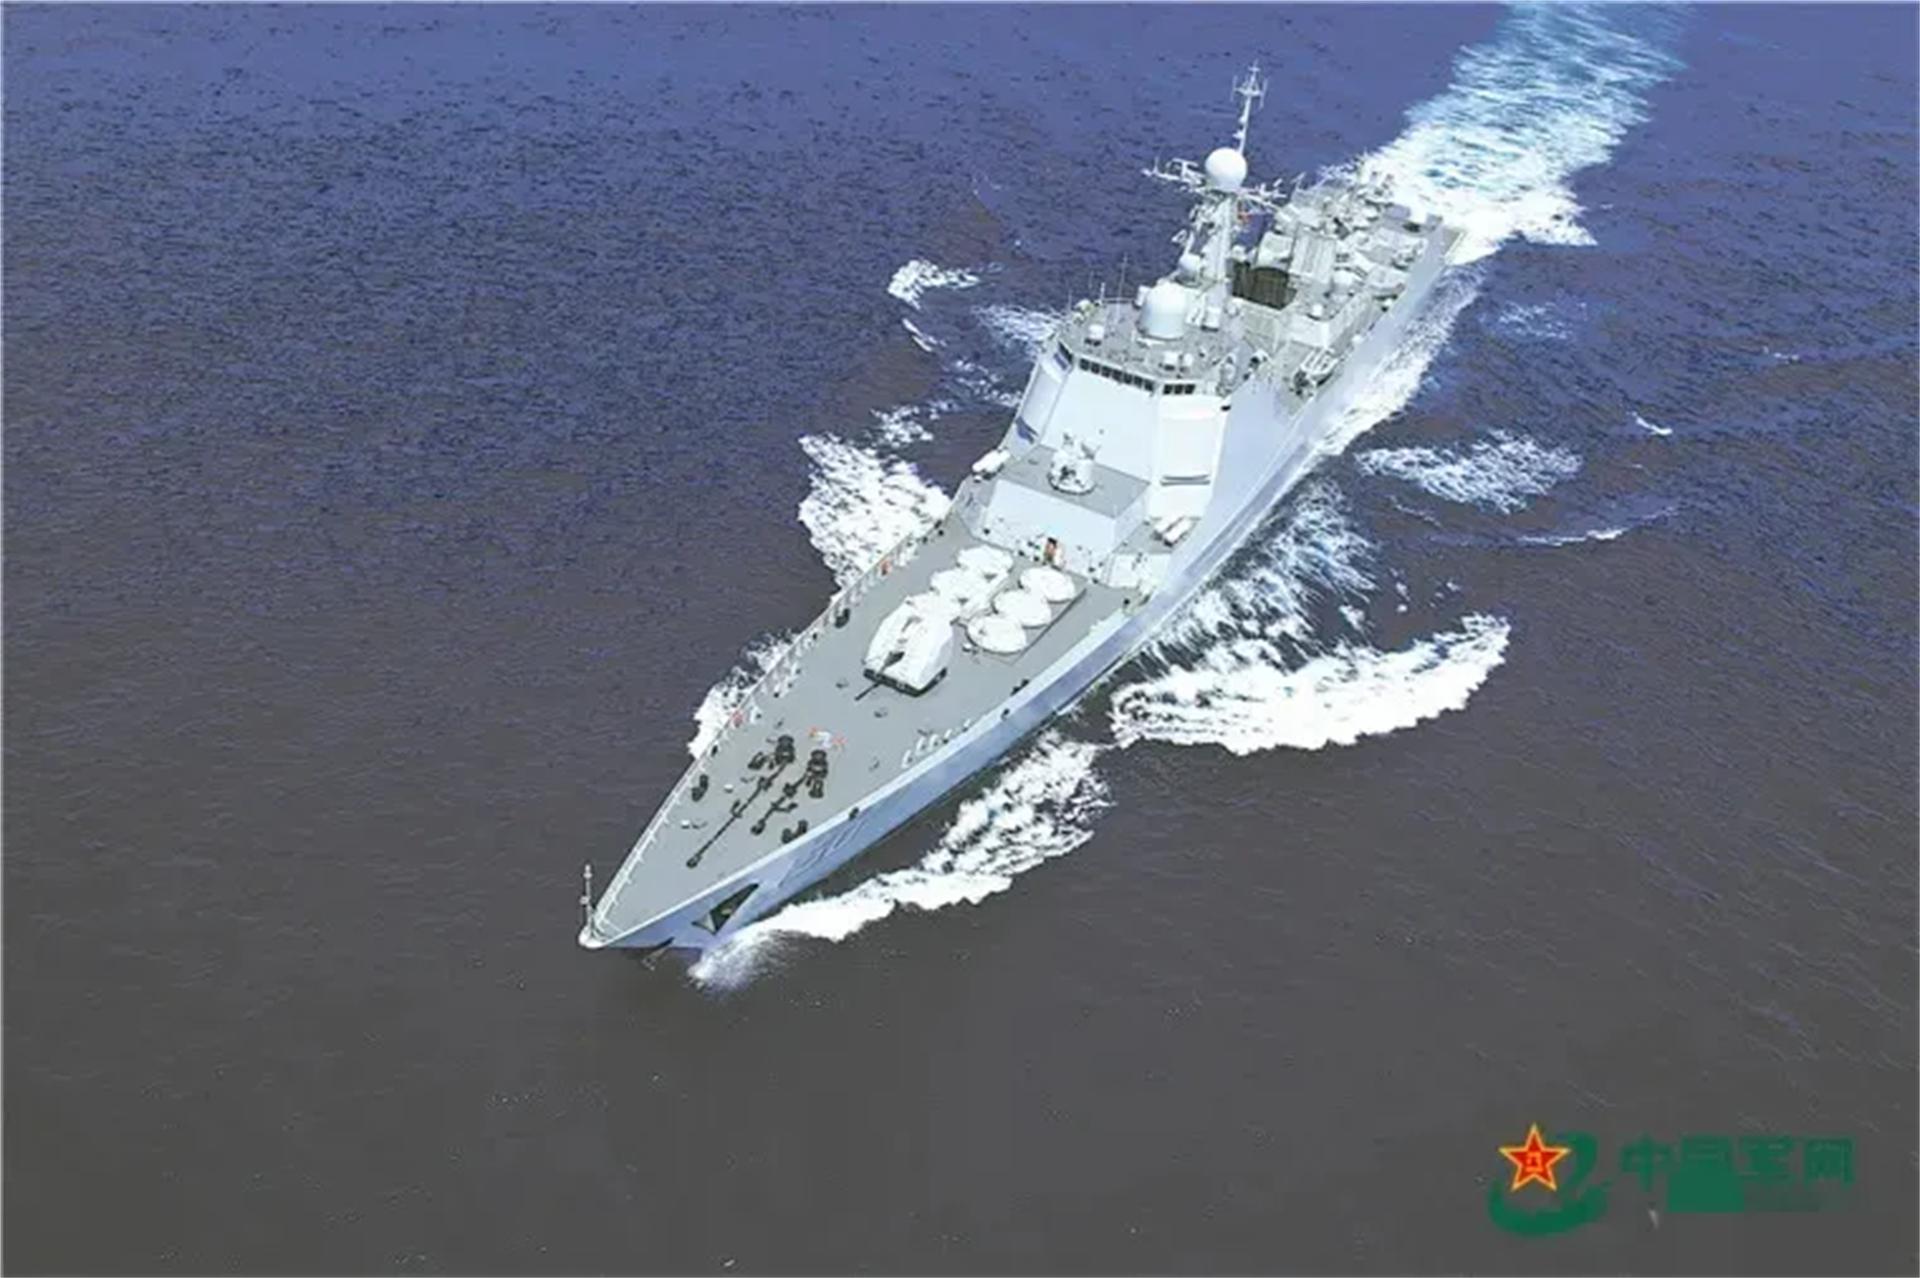 解放军台军船舰对峙是怎么回事,关于台湾货船撞击大陆军舰的新消息 多特软件资讯 